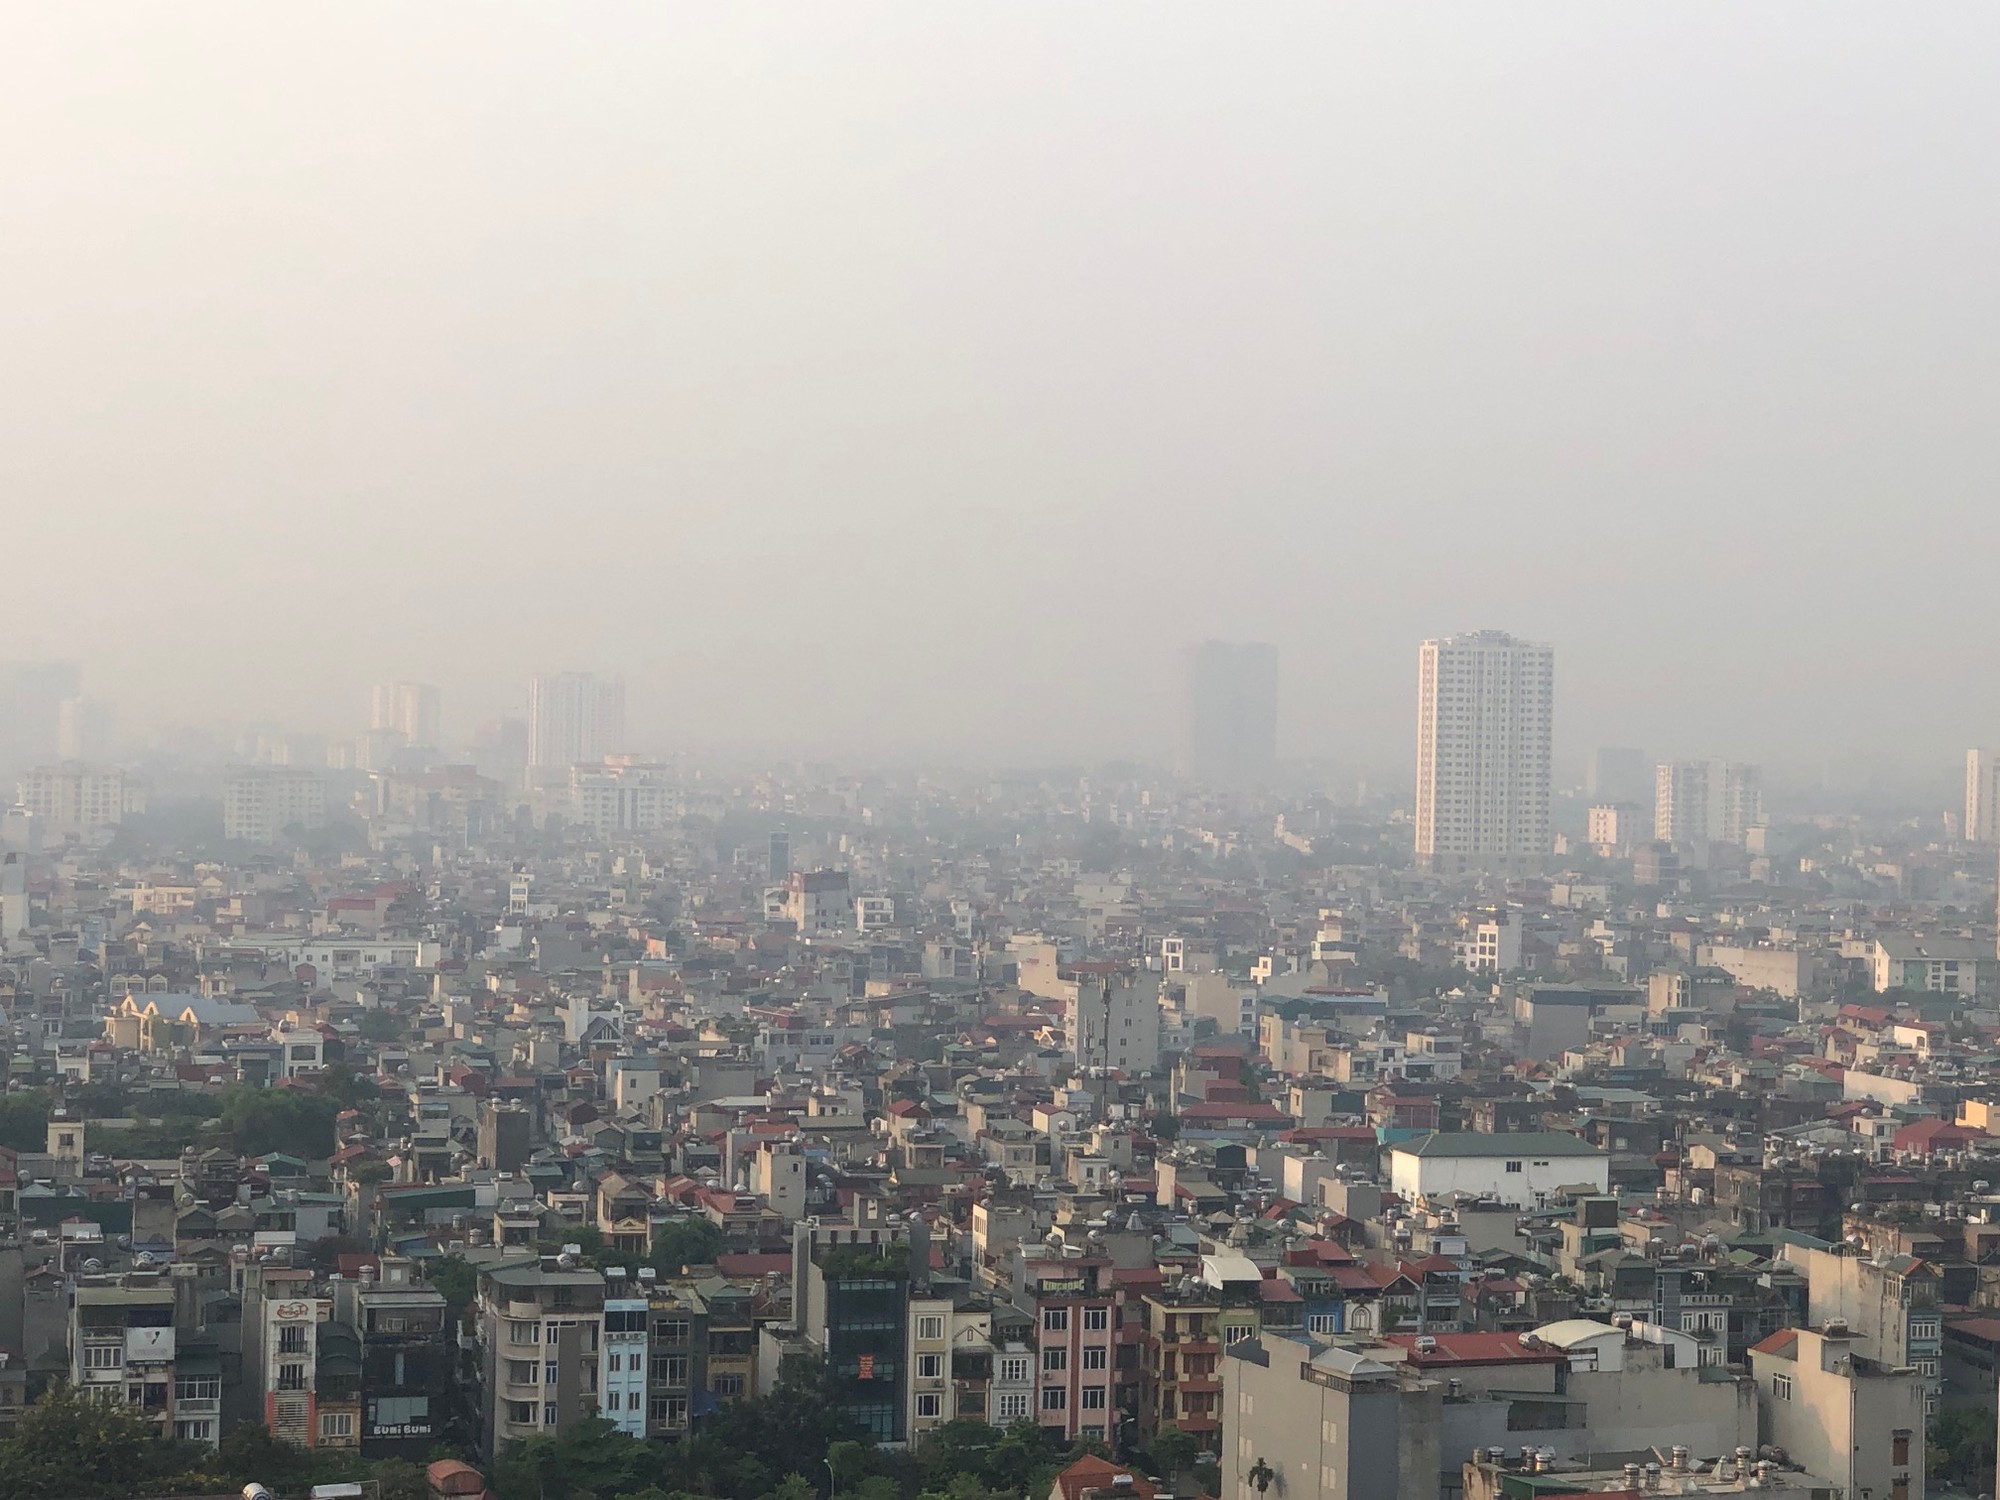 Hình ảnh này cho thấy sự ảnh hưởng của ô nhiễm không khí đến cảnh quan đô thị và vật nuôi, và cũng như những biện pháp cần thiết để giải quyết vấn đề ngày càng nghiêm trọng này.